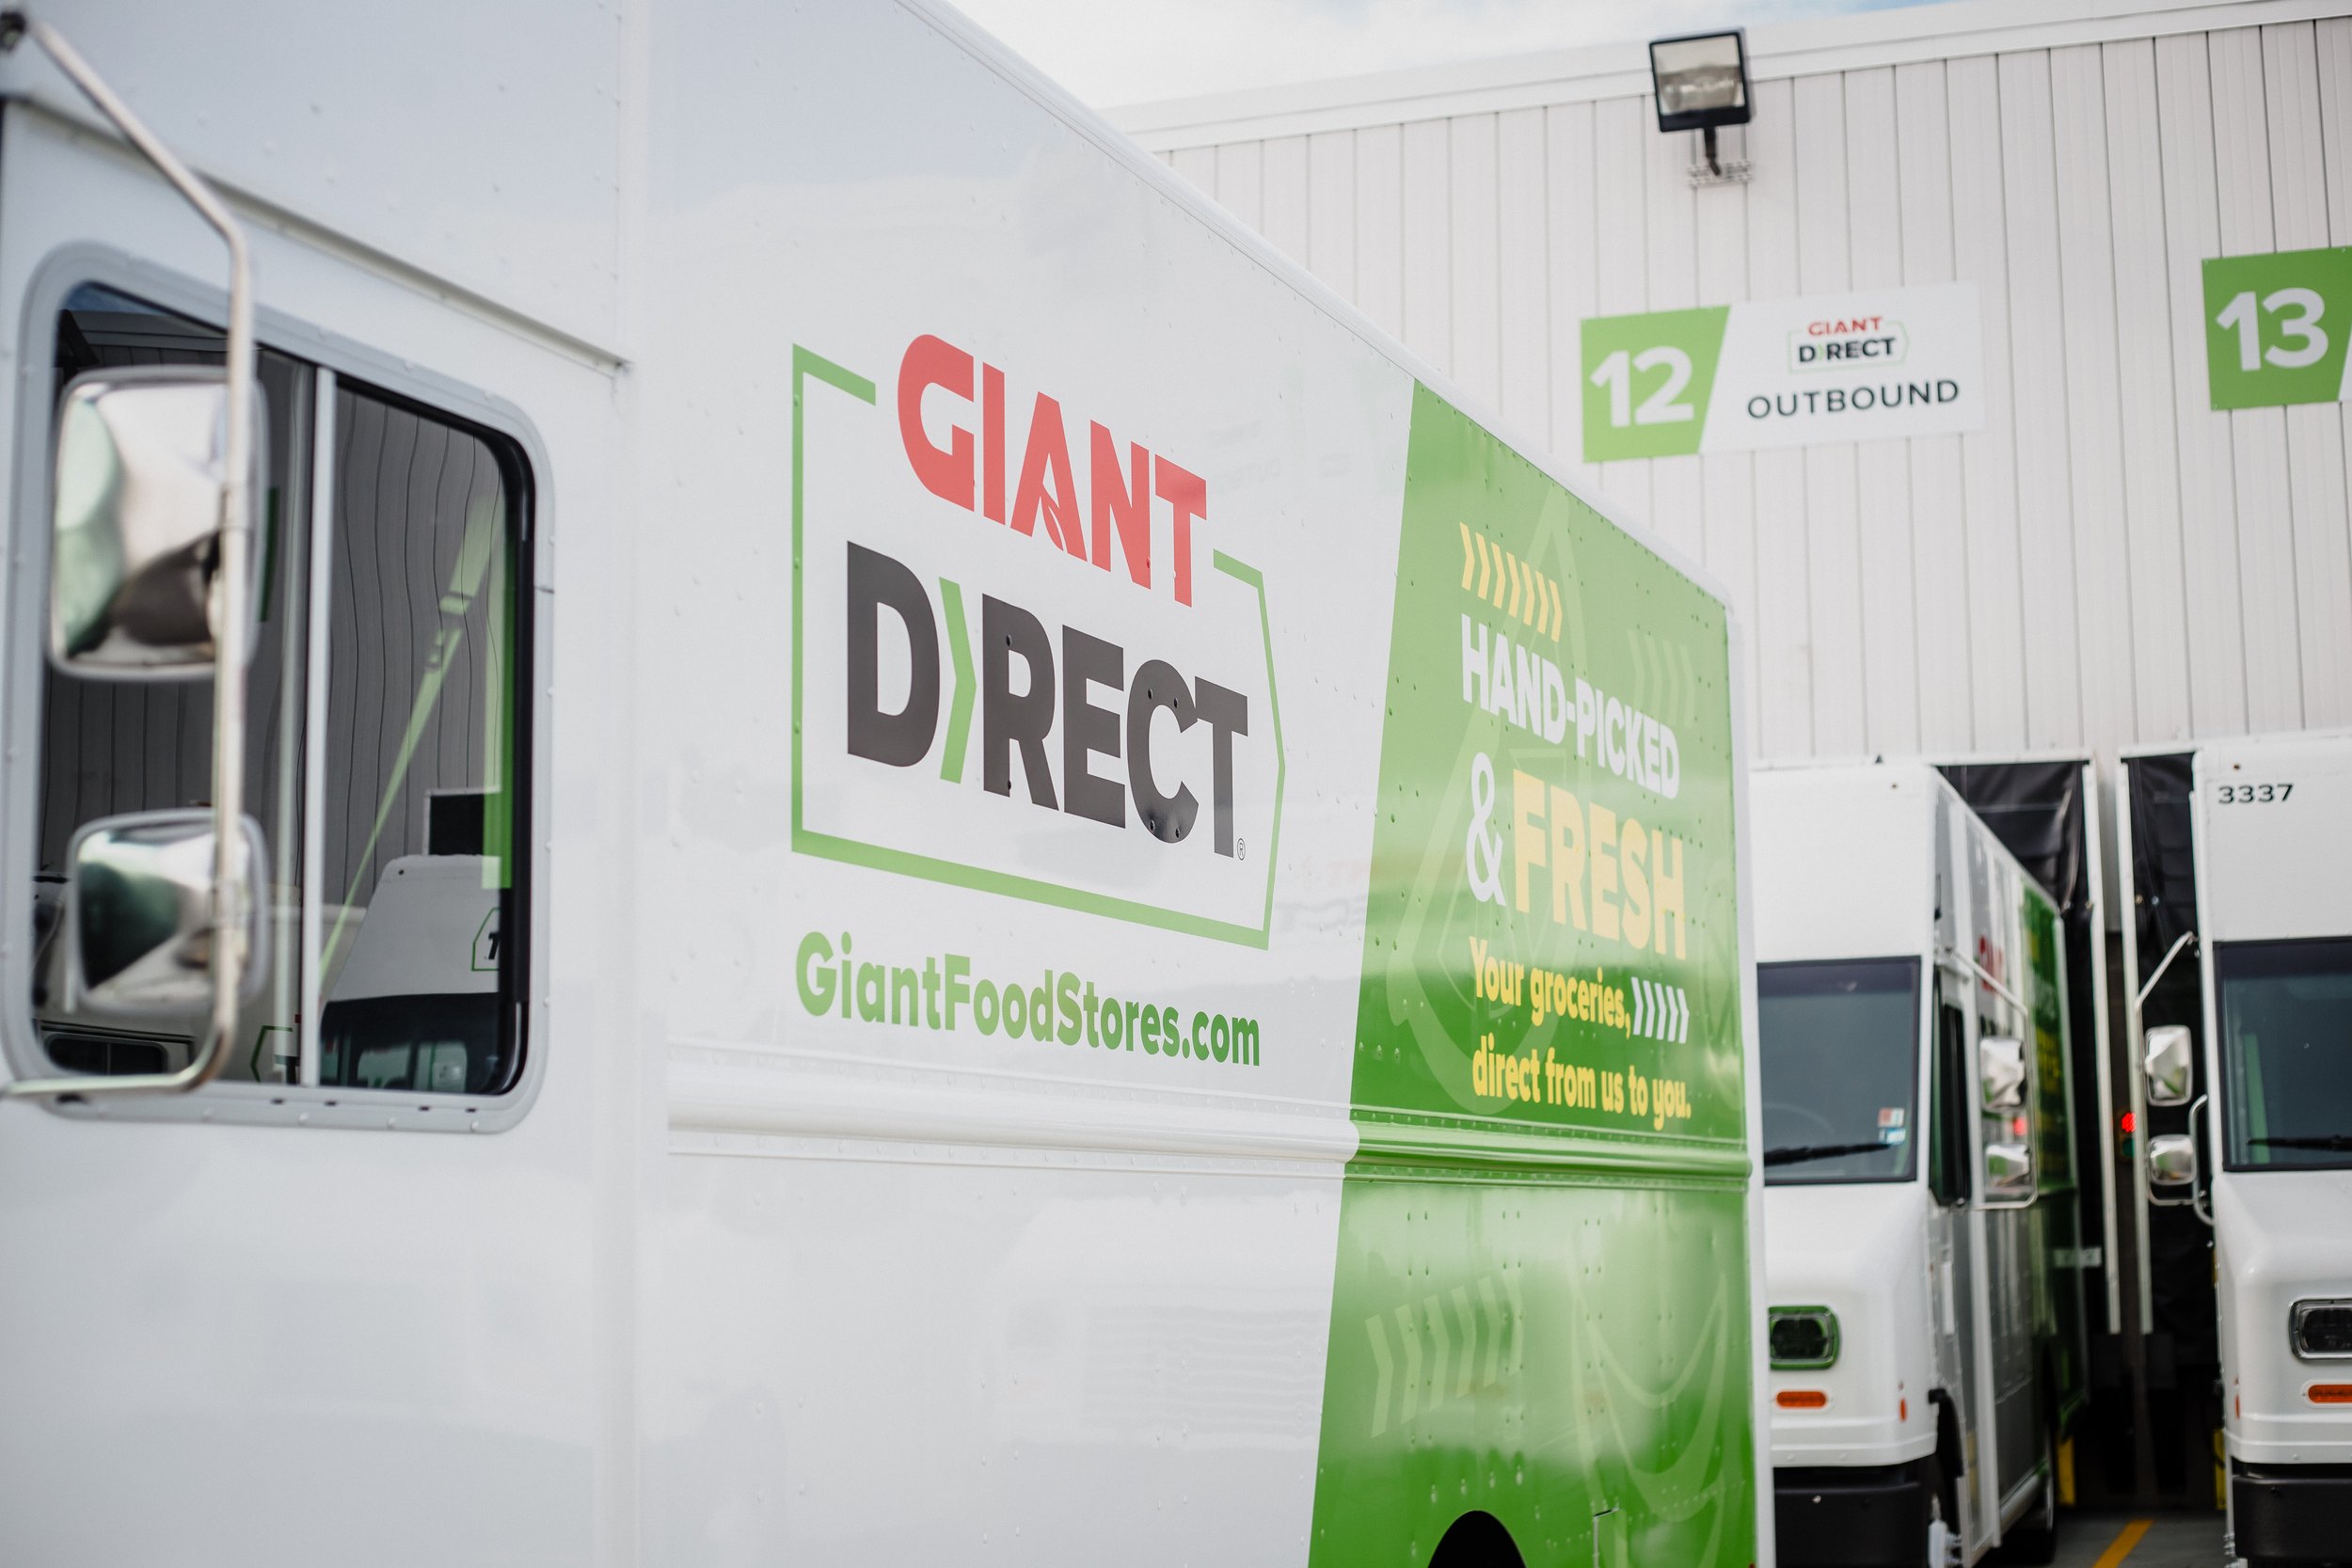 GIANT Direct E-commerce Fulfillment Center Truck 1.jpg